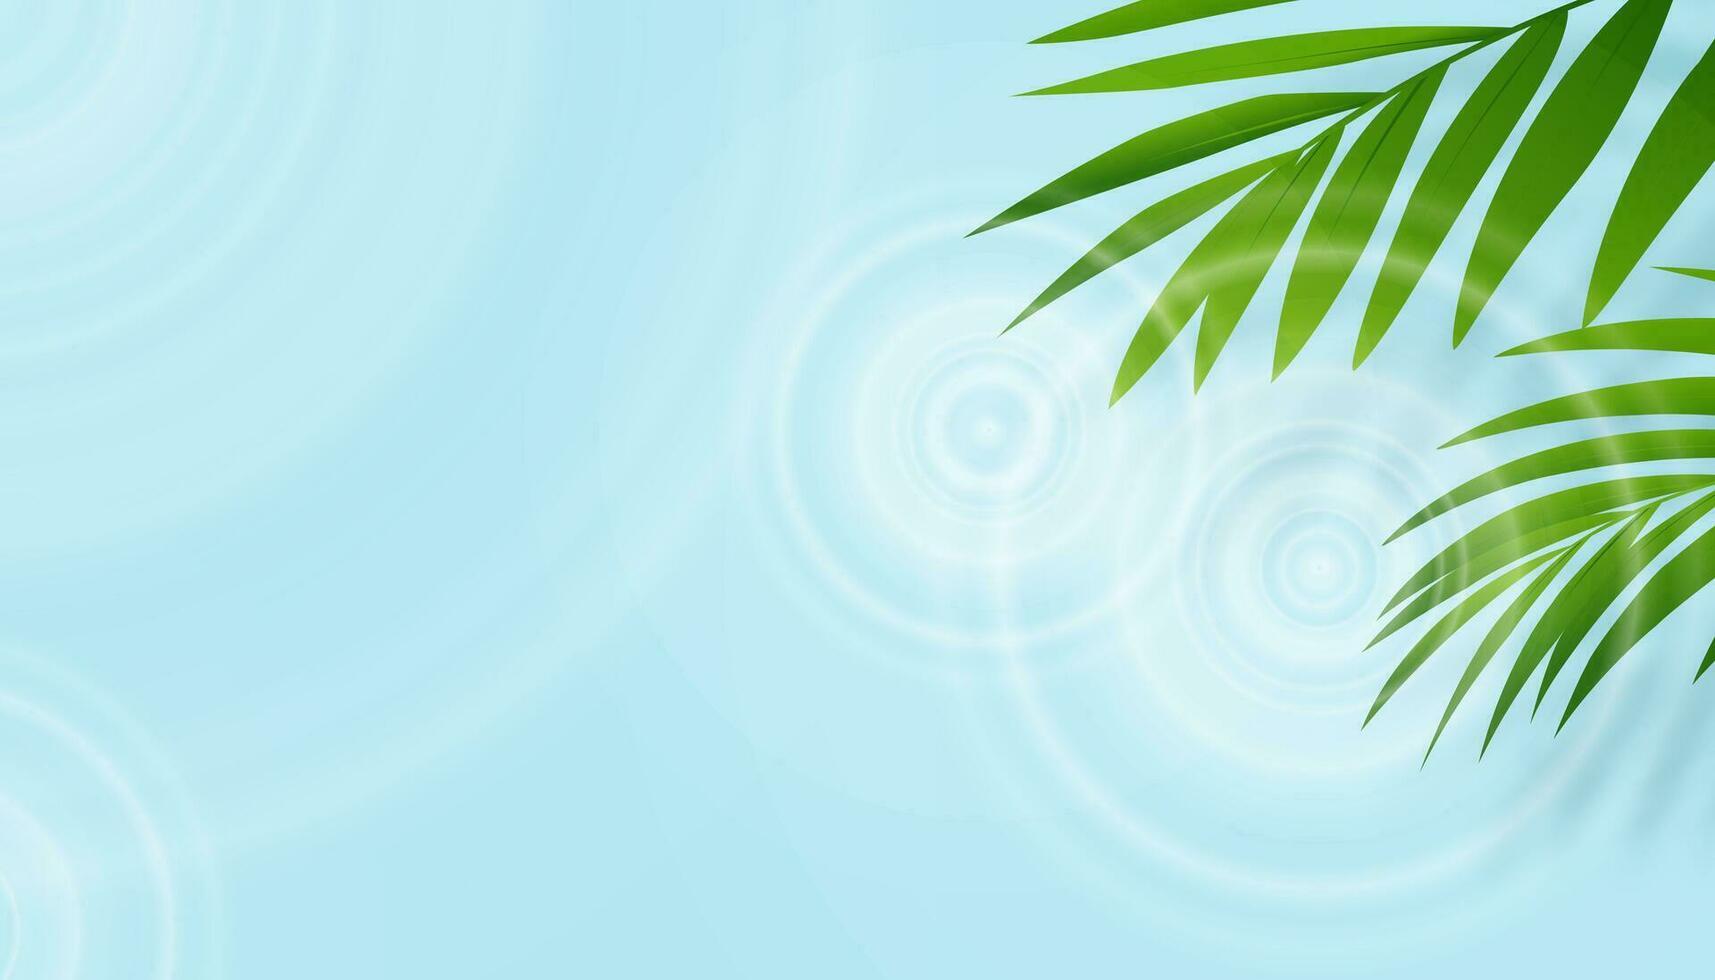 agua antecedentes superficie con verde palma hojas con sombra tropical Coco hoja debajo claro azul agua ondas textura, vector bandera para cosmético producto presente en primavera verano rebaja promoción